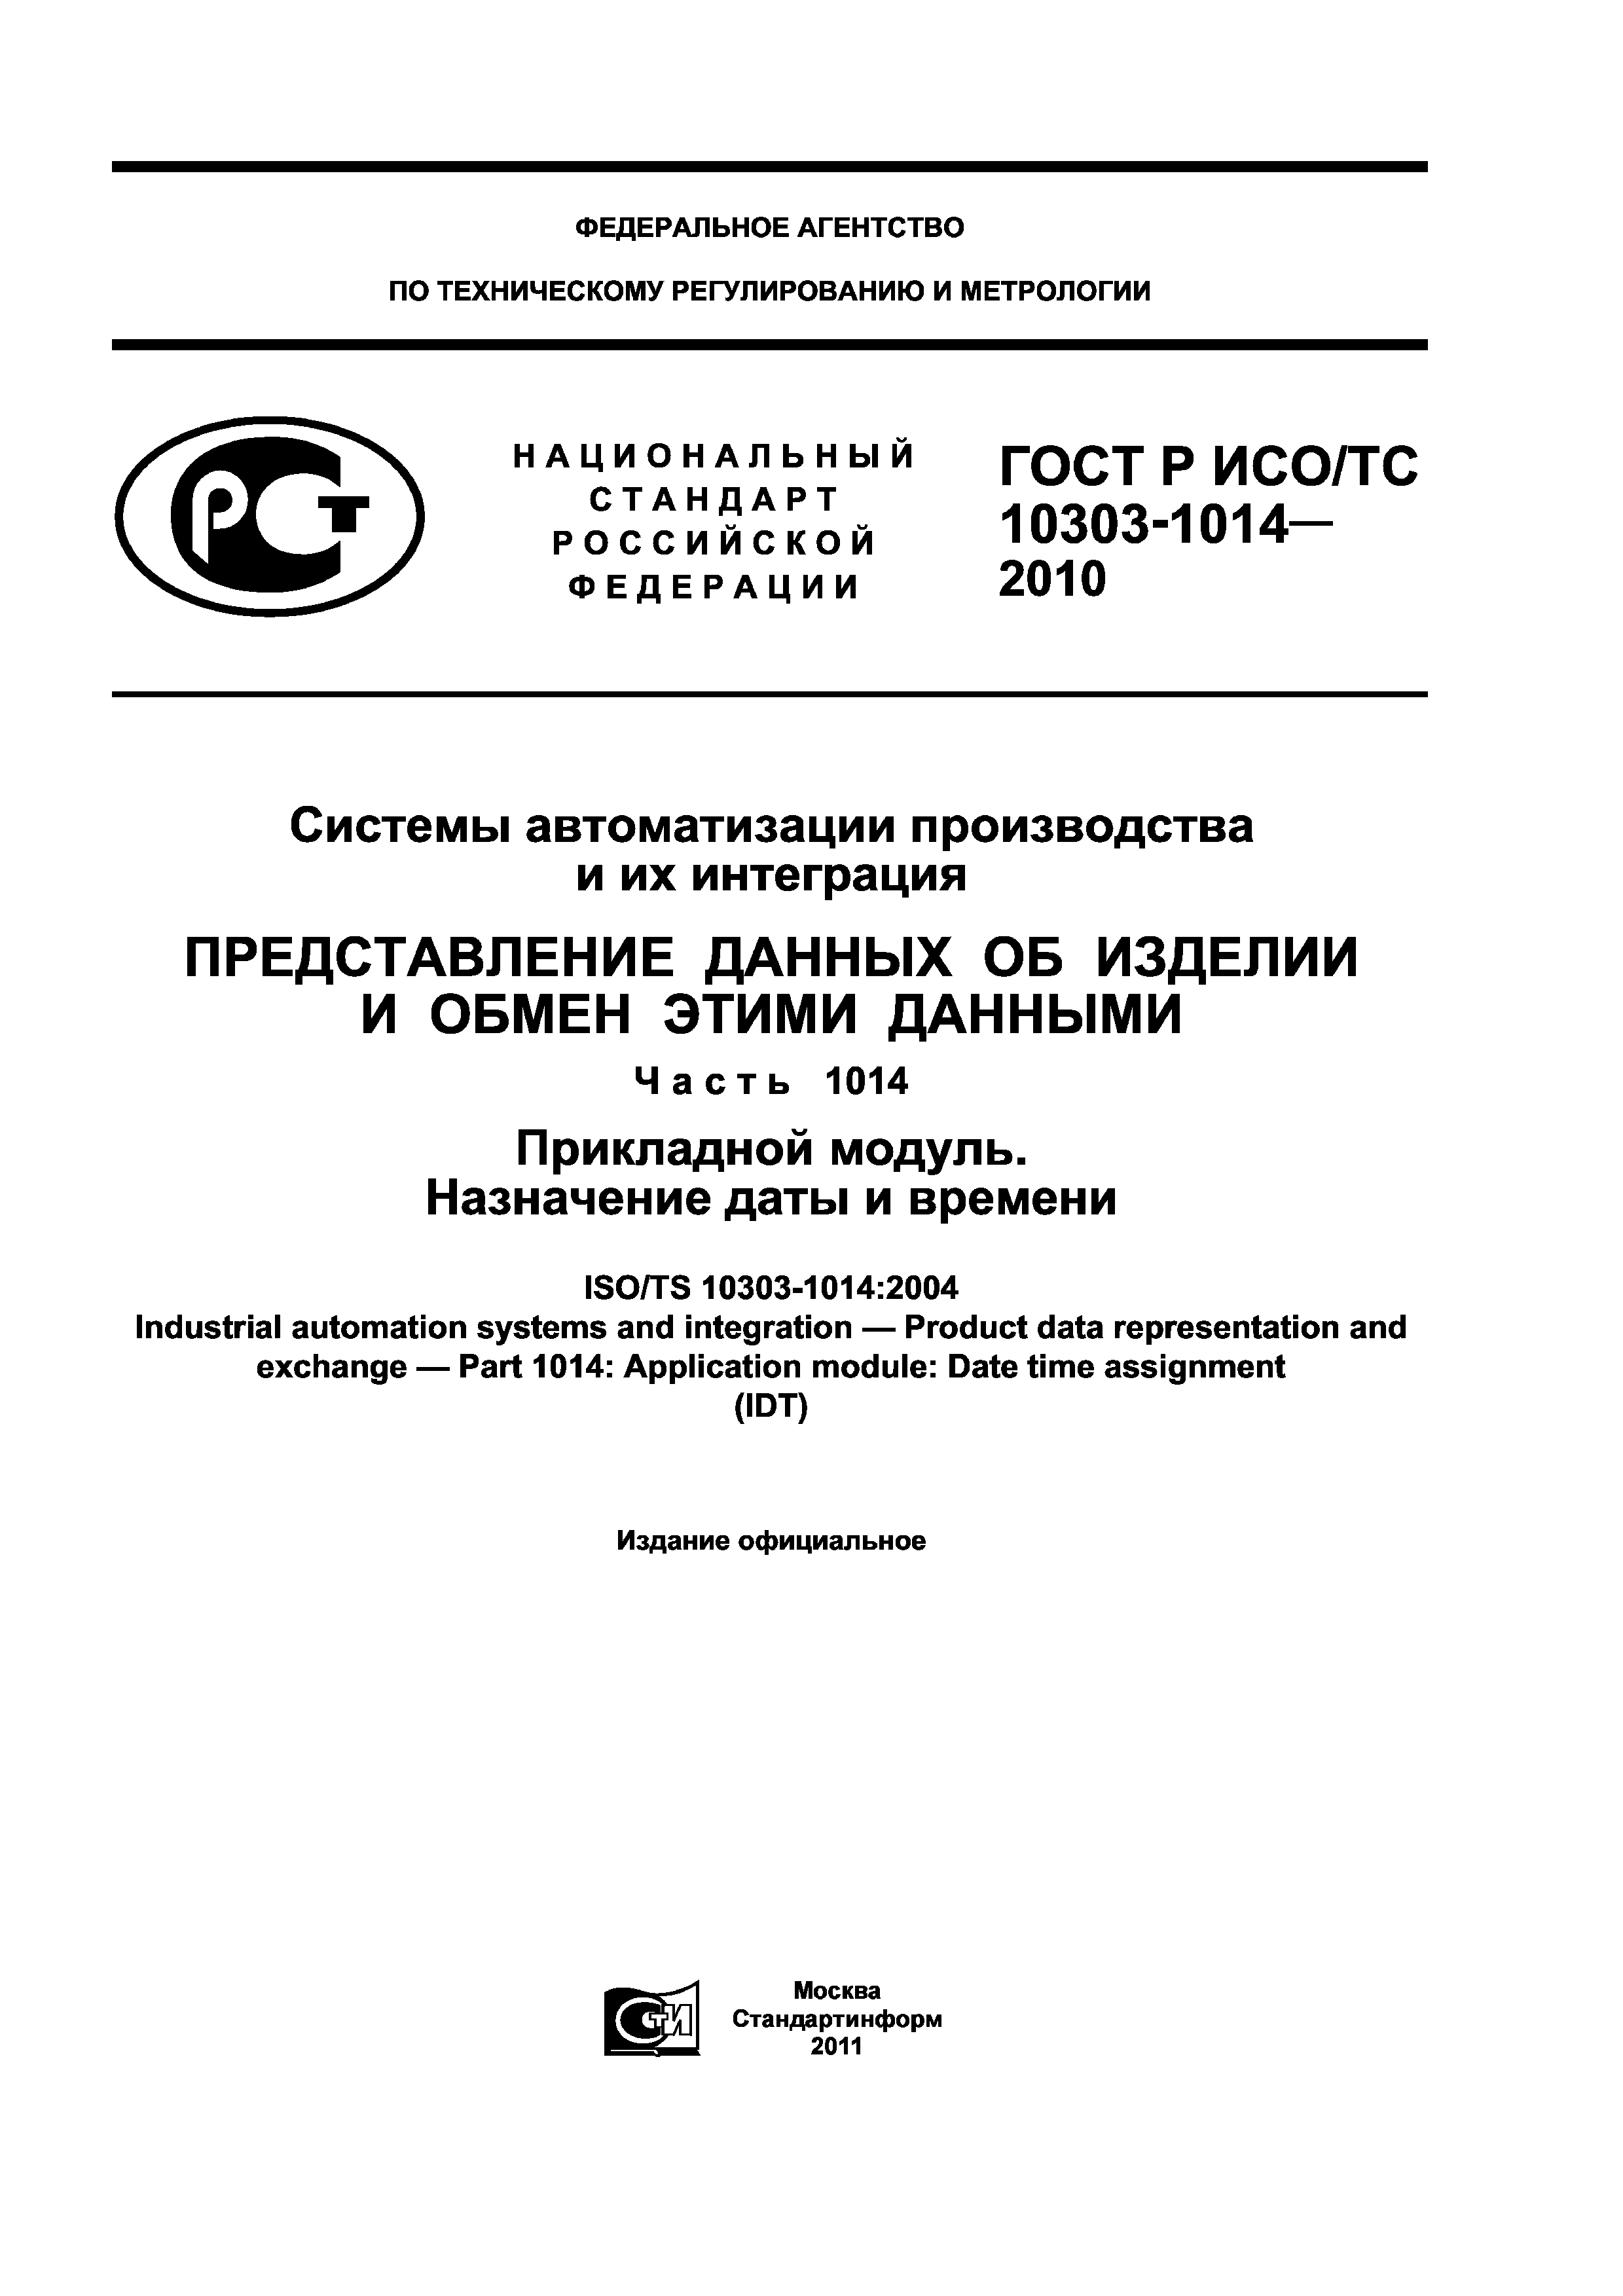 ГОСТ Р ИСО/ТС 10303-1014-2010